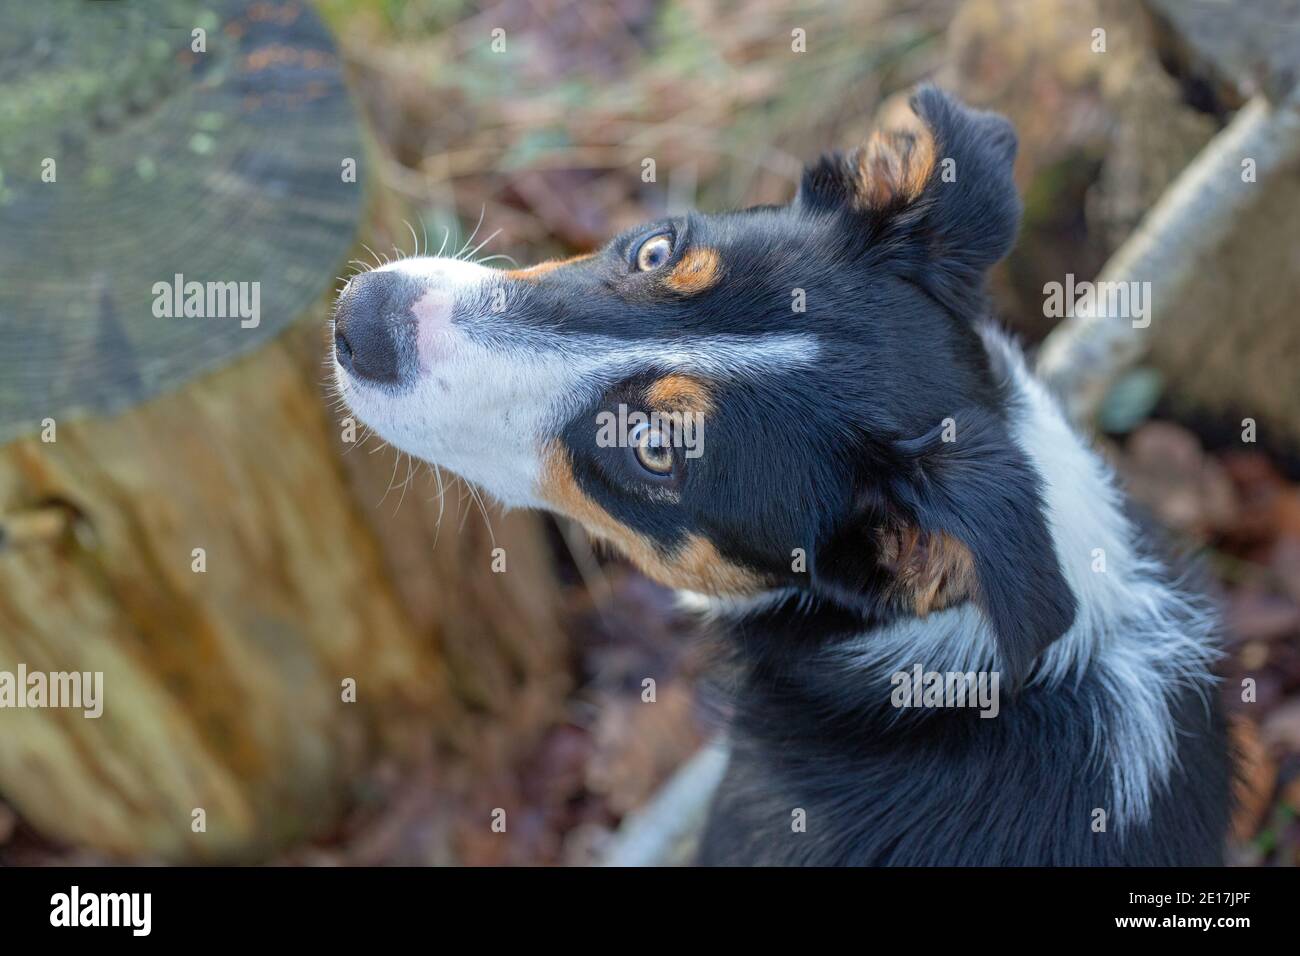 Dreifarbiger Border Collie Dog (Canis lupus familiaris). Haustier, Begleiter, Arbeit, Rasse. Kopf, Rückenansicht. Blick auf Gesichtszüge, Details. Stockfoto